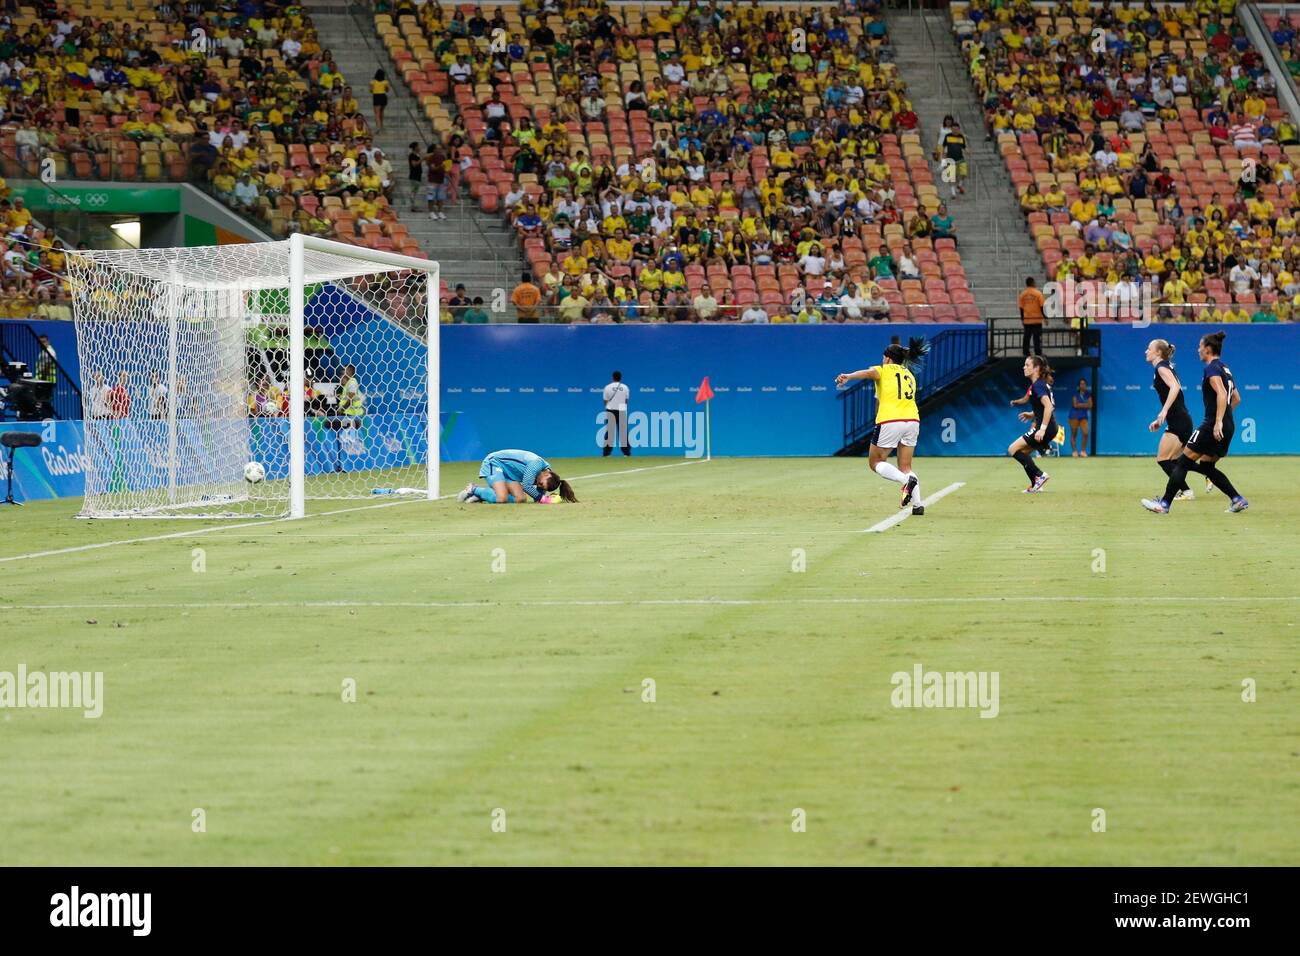 MANAUS, AM - 09,08.2016: OLYMPIADE 2016 FUSSBALL MANAUS - erstes Tor zu  Gunsten von Kolumbien während des Spiels zwischen Kolumbien (COL) x  Vereinigte Staaten (US) durch die Spielgruppe G Olympic Women'otball ill